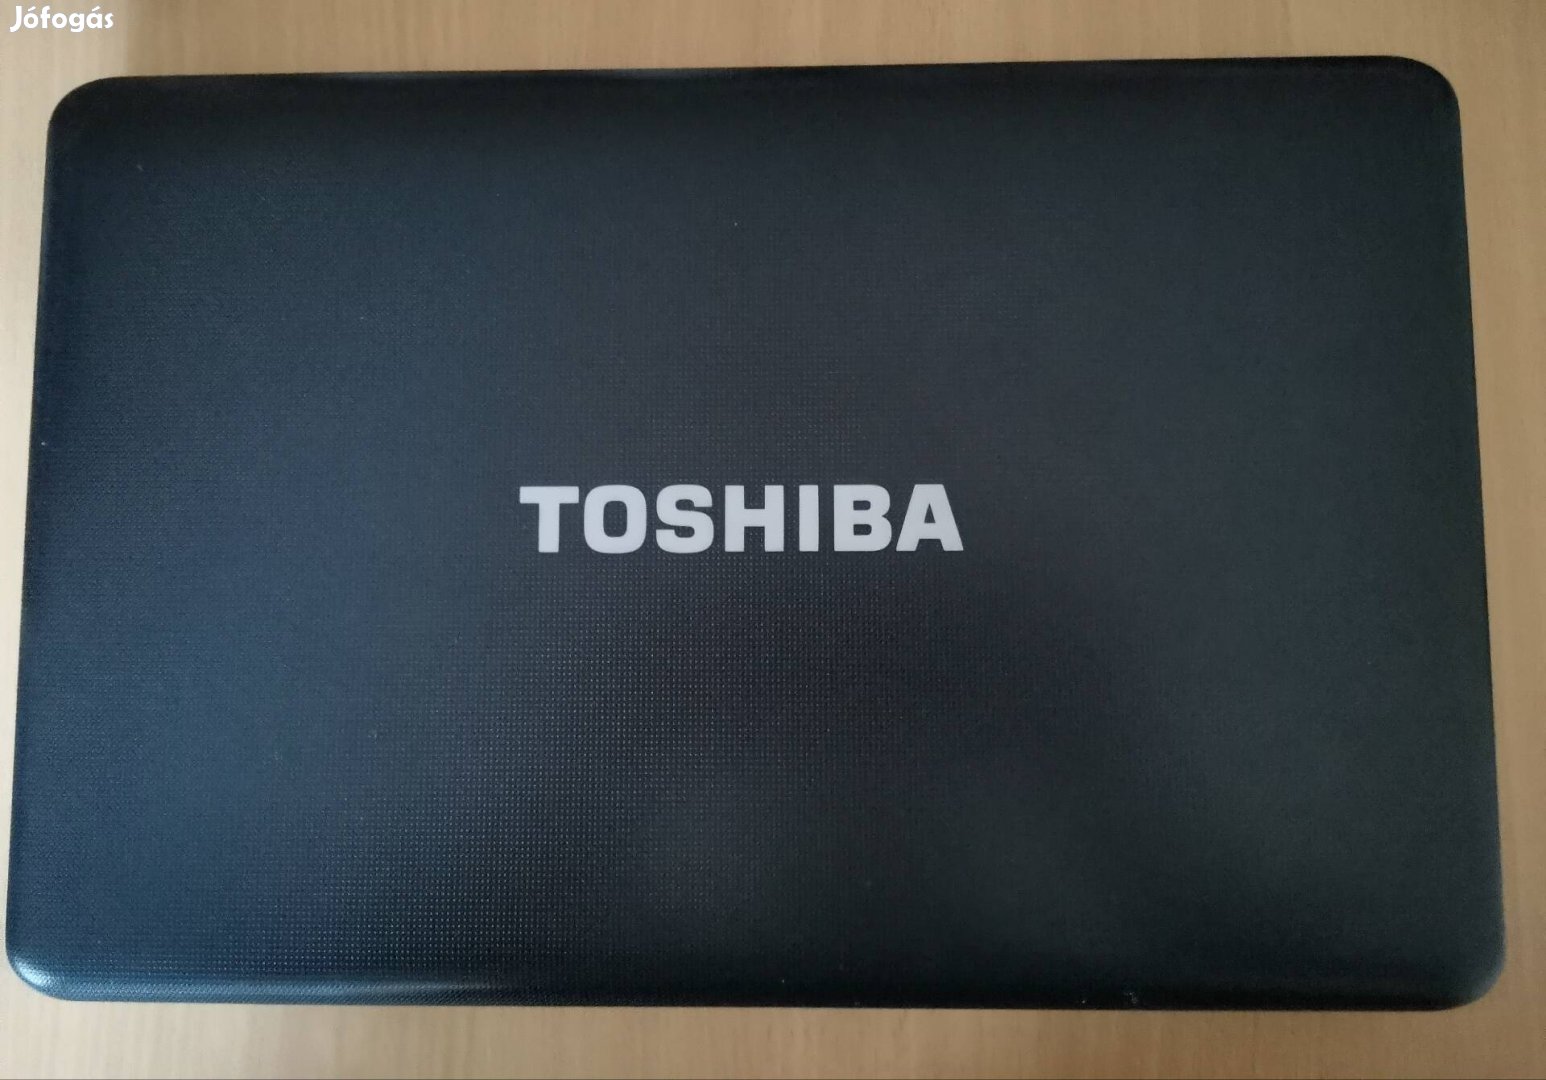 Toshiba Satellite Pro C650 eladó!